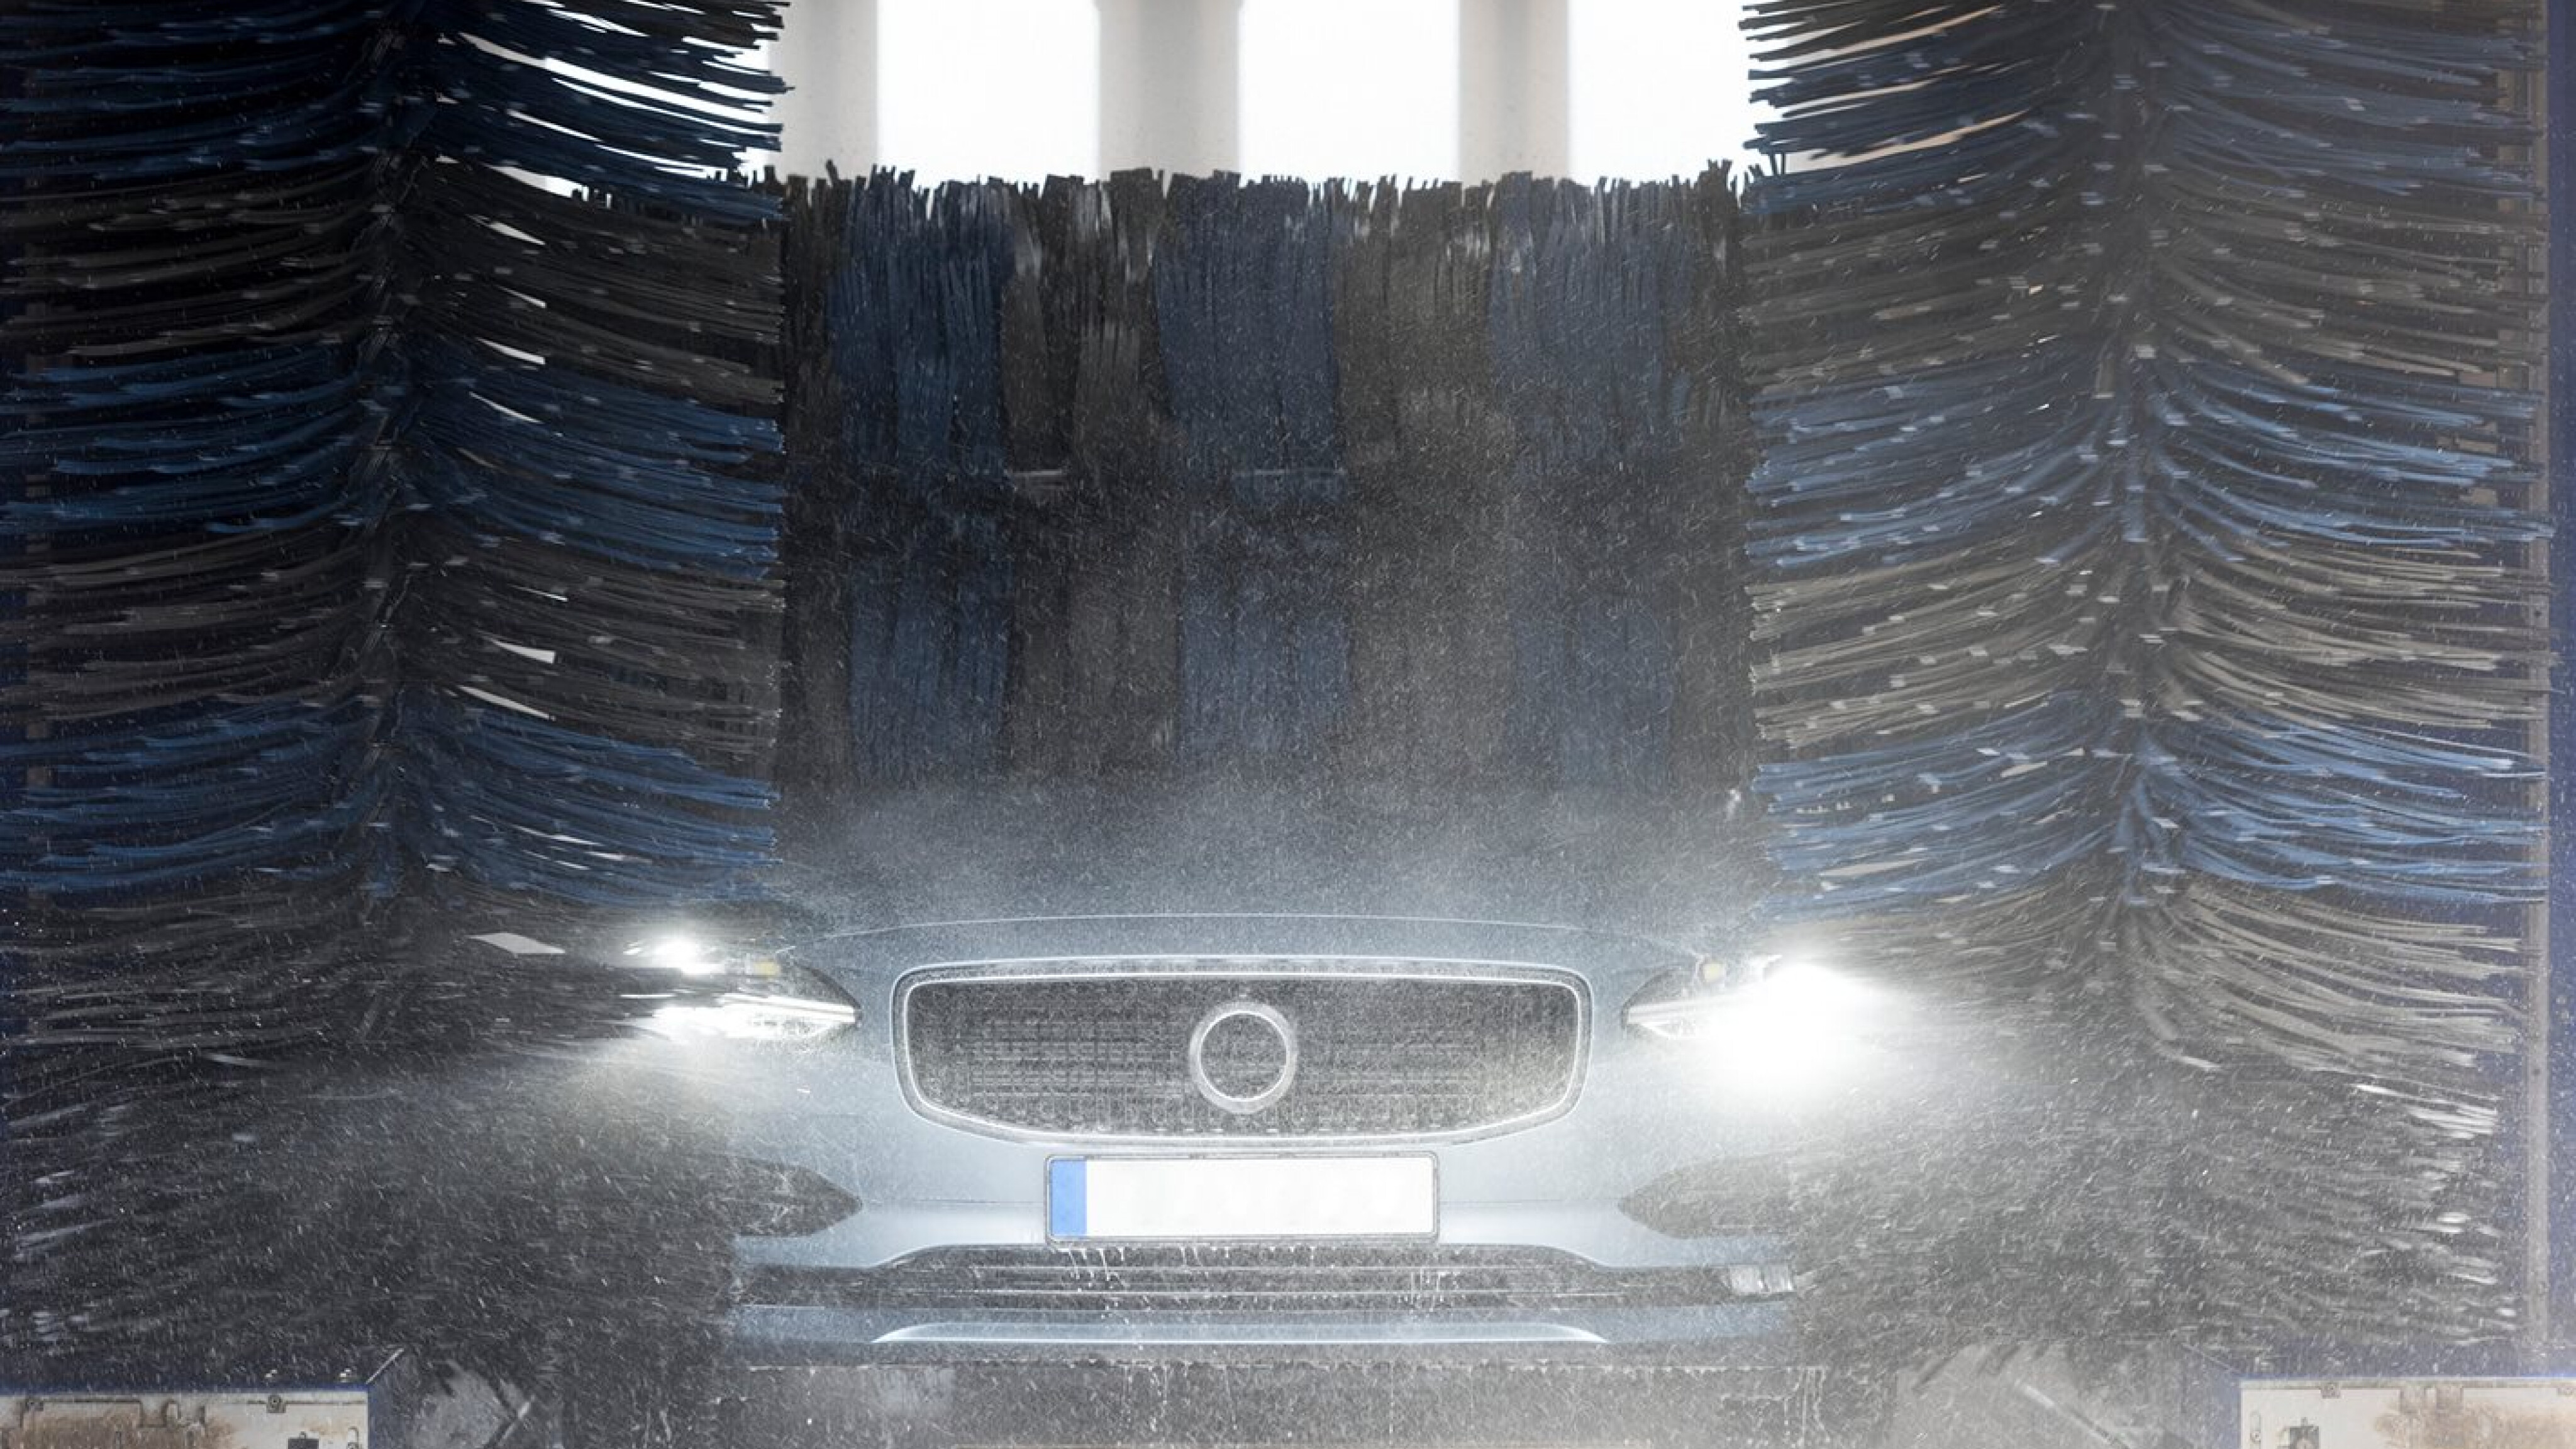 Are Automatic Car Washes a Good Idea?